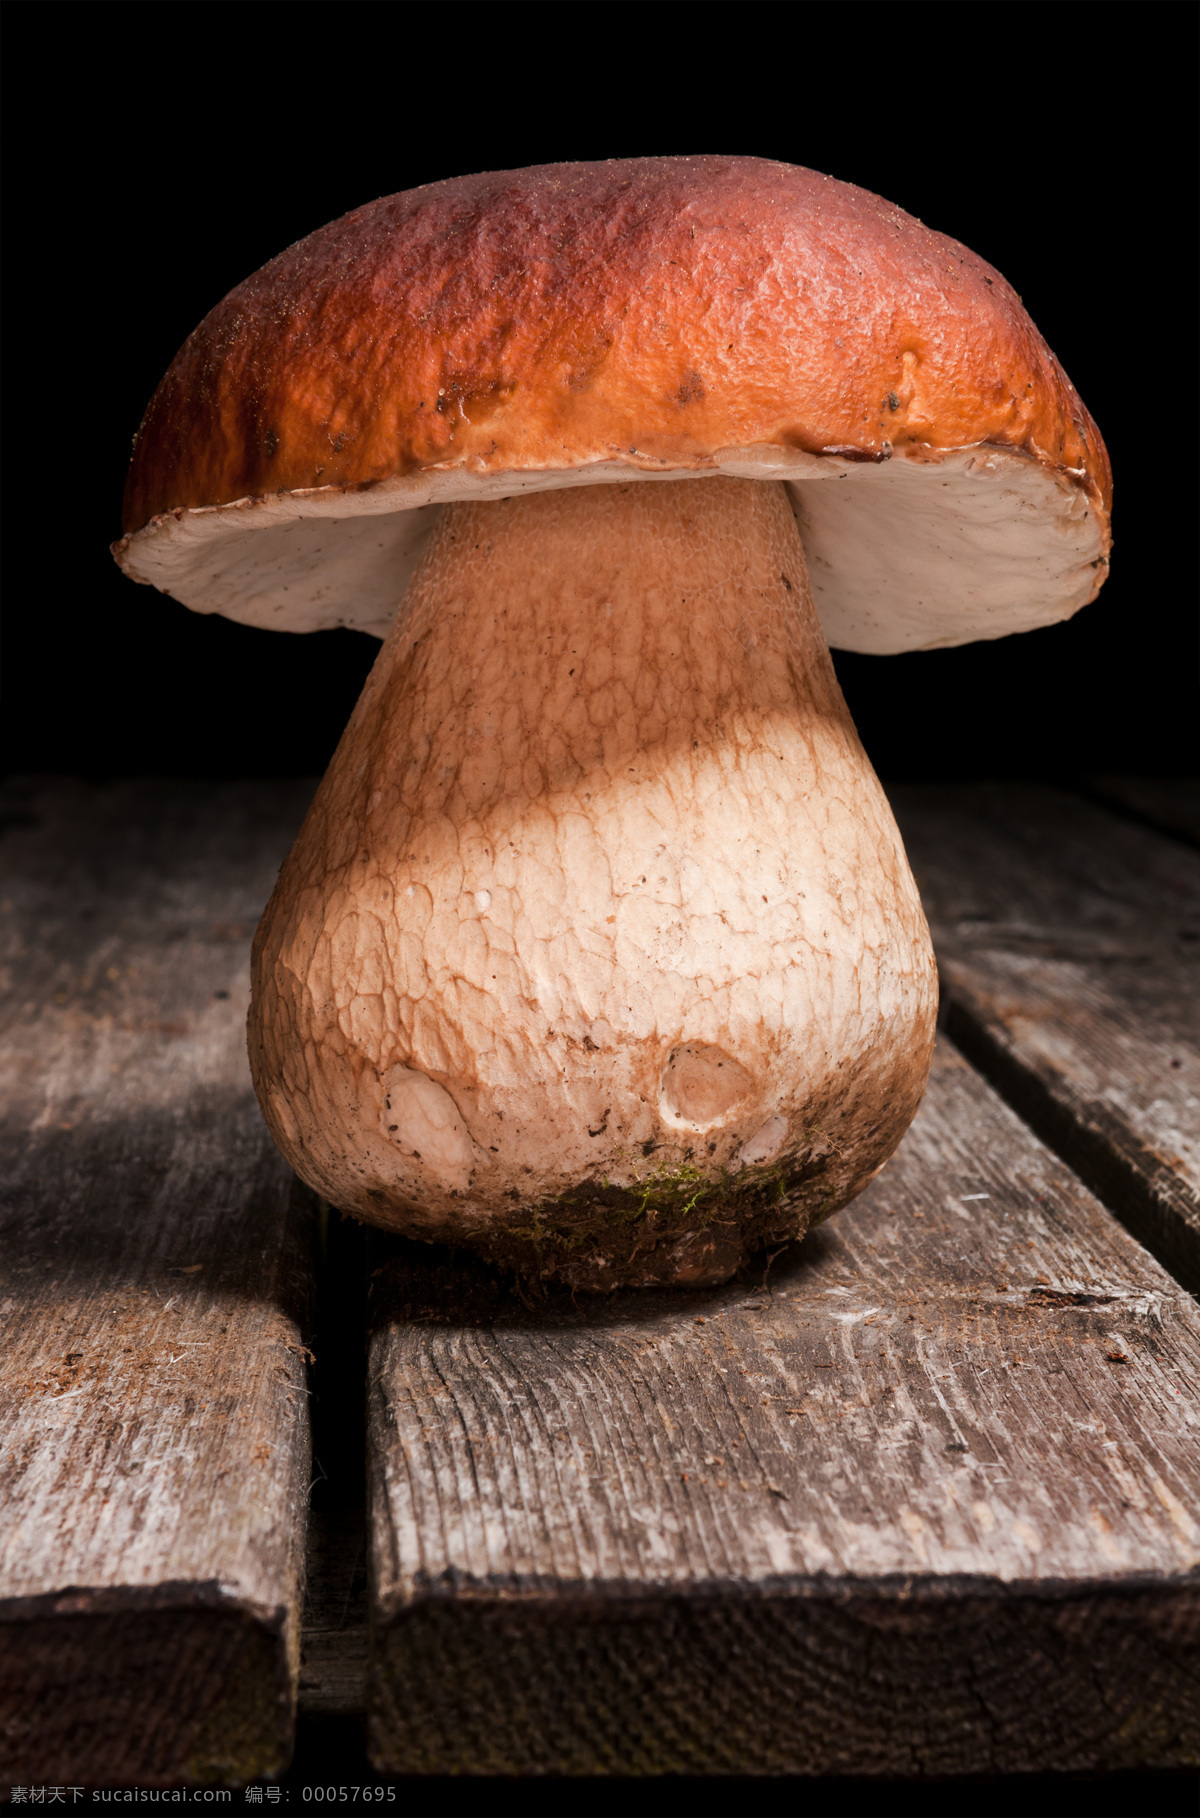 蘑菇 菌类 生物世界 蔬菜 野蘑菇 香蘑菇 野菌菇 食用菌 菇子 菇类 风景 生活 旅游餐饮